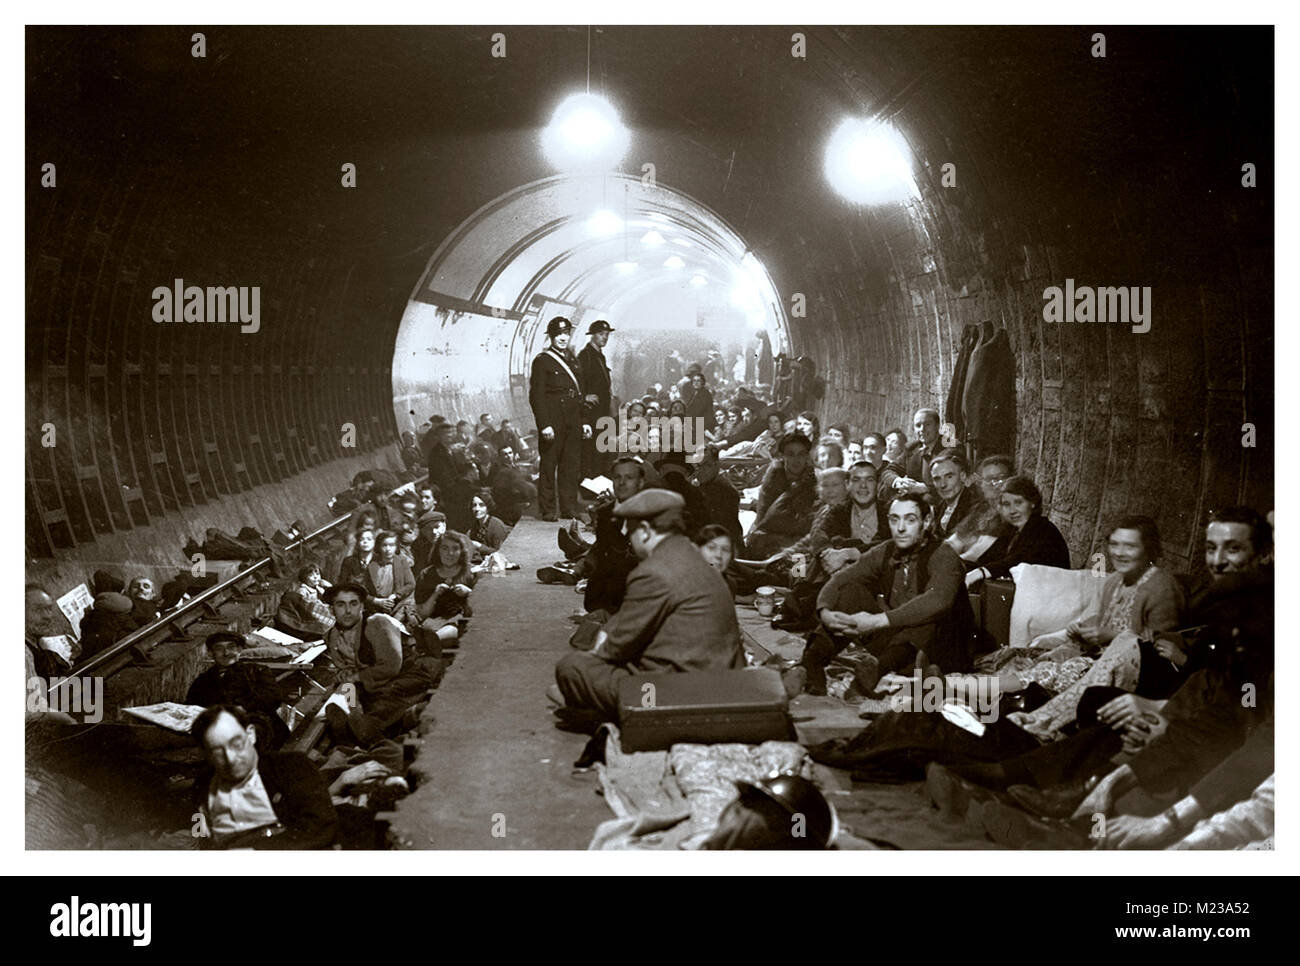 La station de métro WW2 1940 abrite le London Blitz.. Station de métro agissant comme un refuge pour les résidents de Londres contre les bombardements terroristes soutenus par l'Allemagne nazie. Adolf Hitler a tenté de bombarder les principaux centres de population en Angleterre en utilisant la Luftwaffe nazie comme un outil pour tenter de terroriser la population locale résidente du Royaume-Uni Banque D'Images